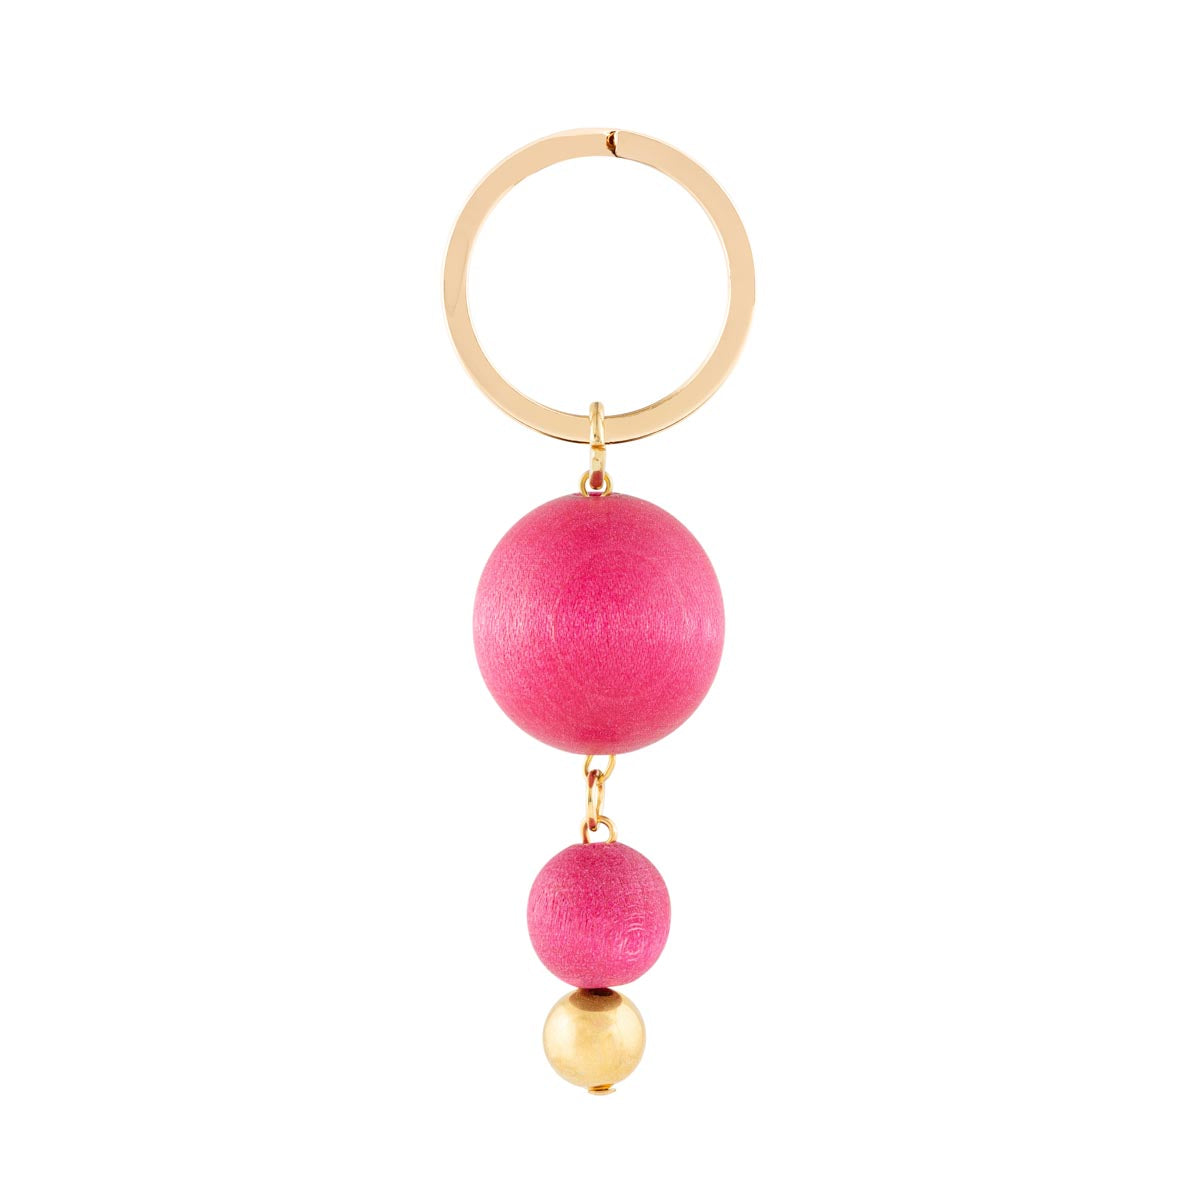 Iisa key ring, pink and gold